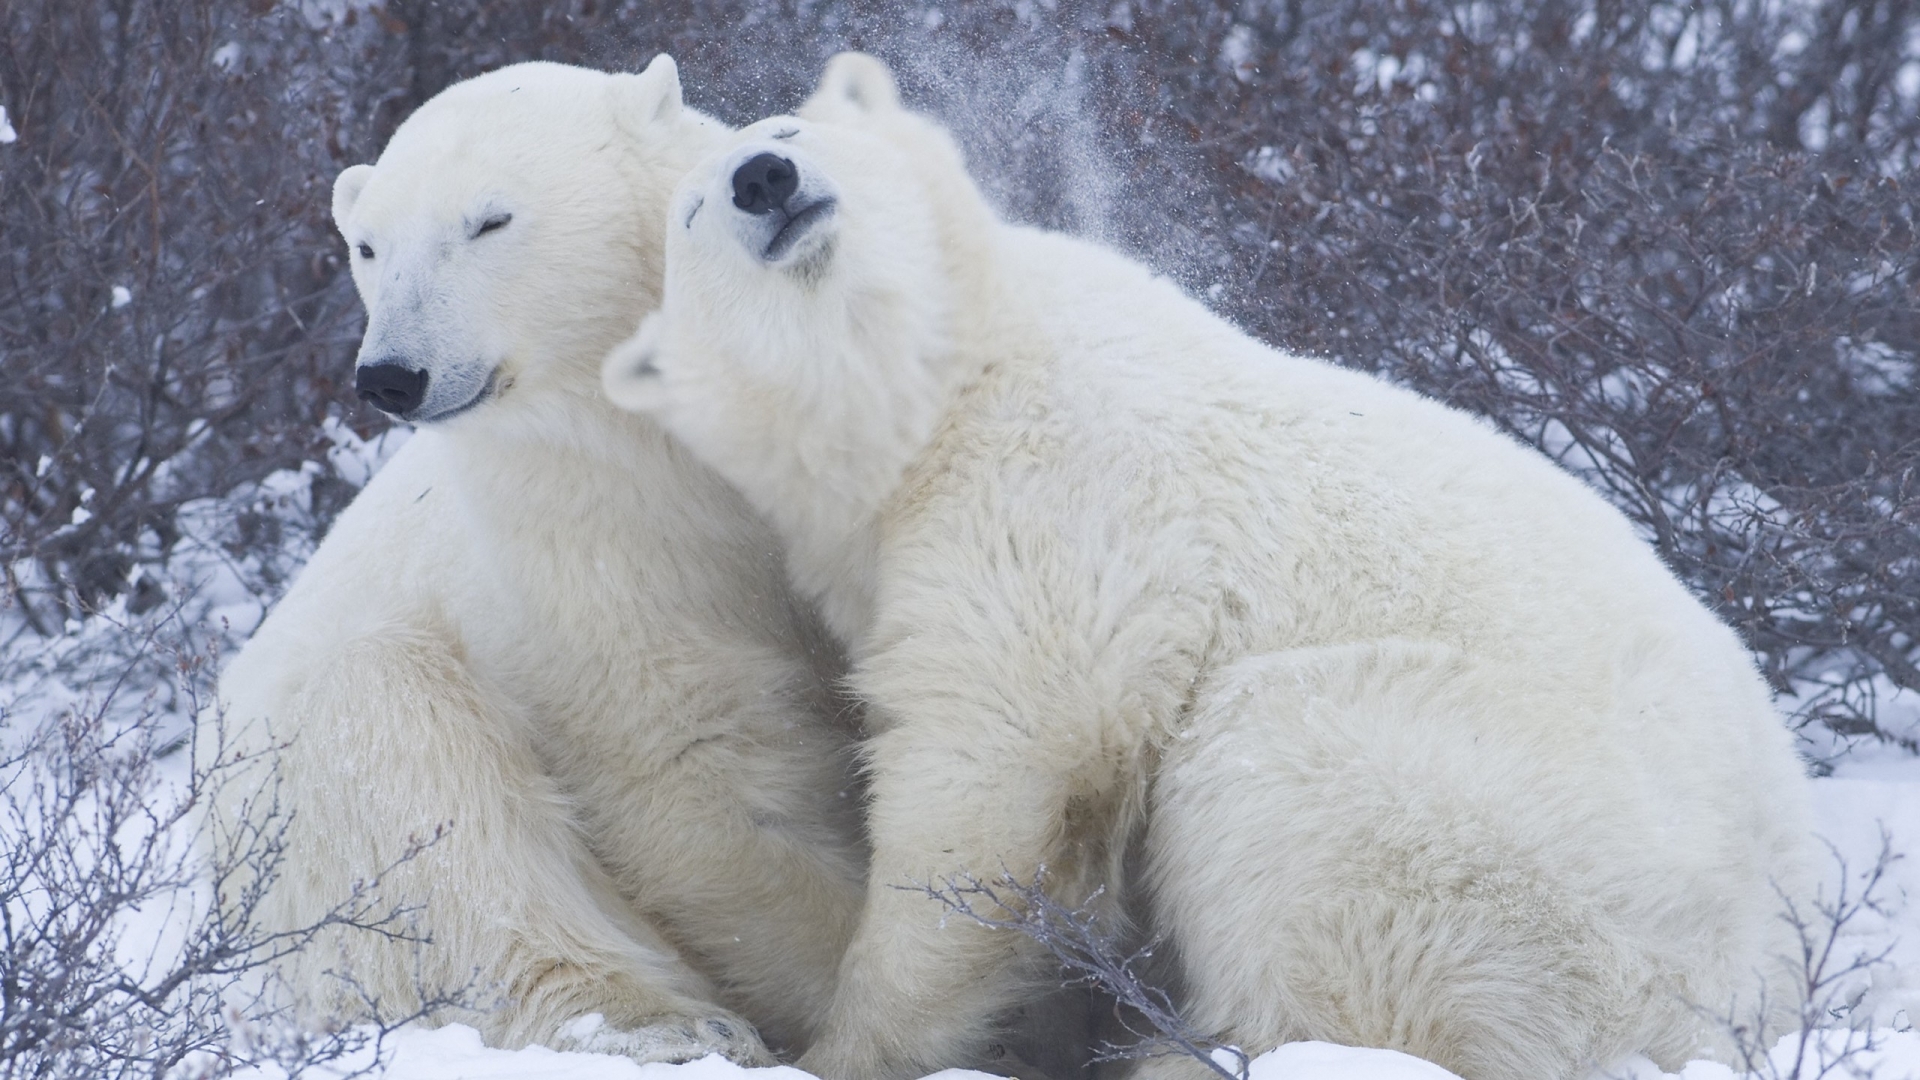 Cute Polar Bears for 1920 x 1080 HDTV 1080p resolution